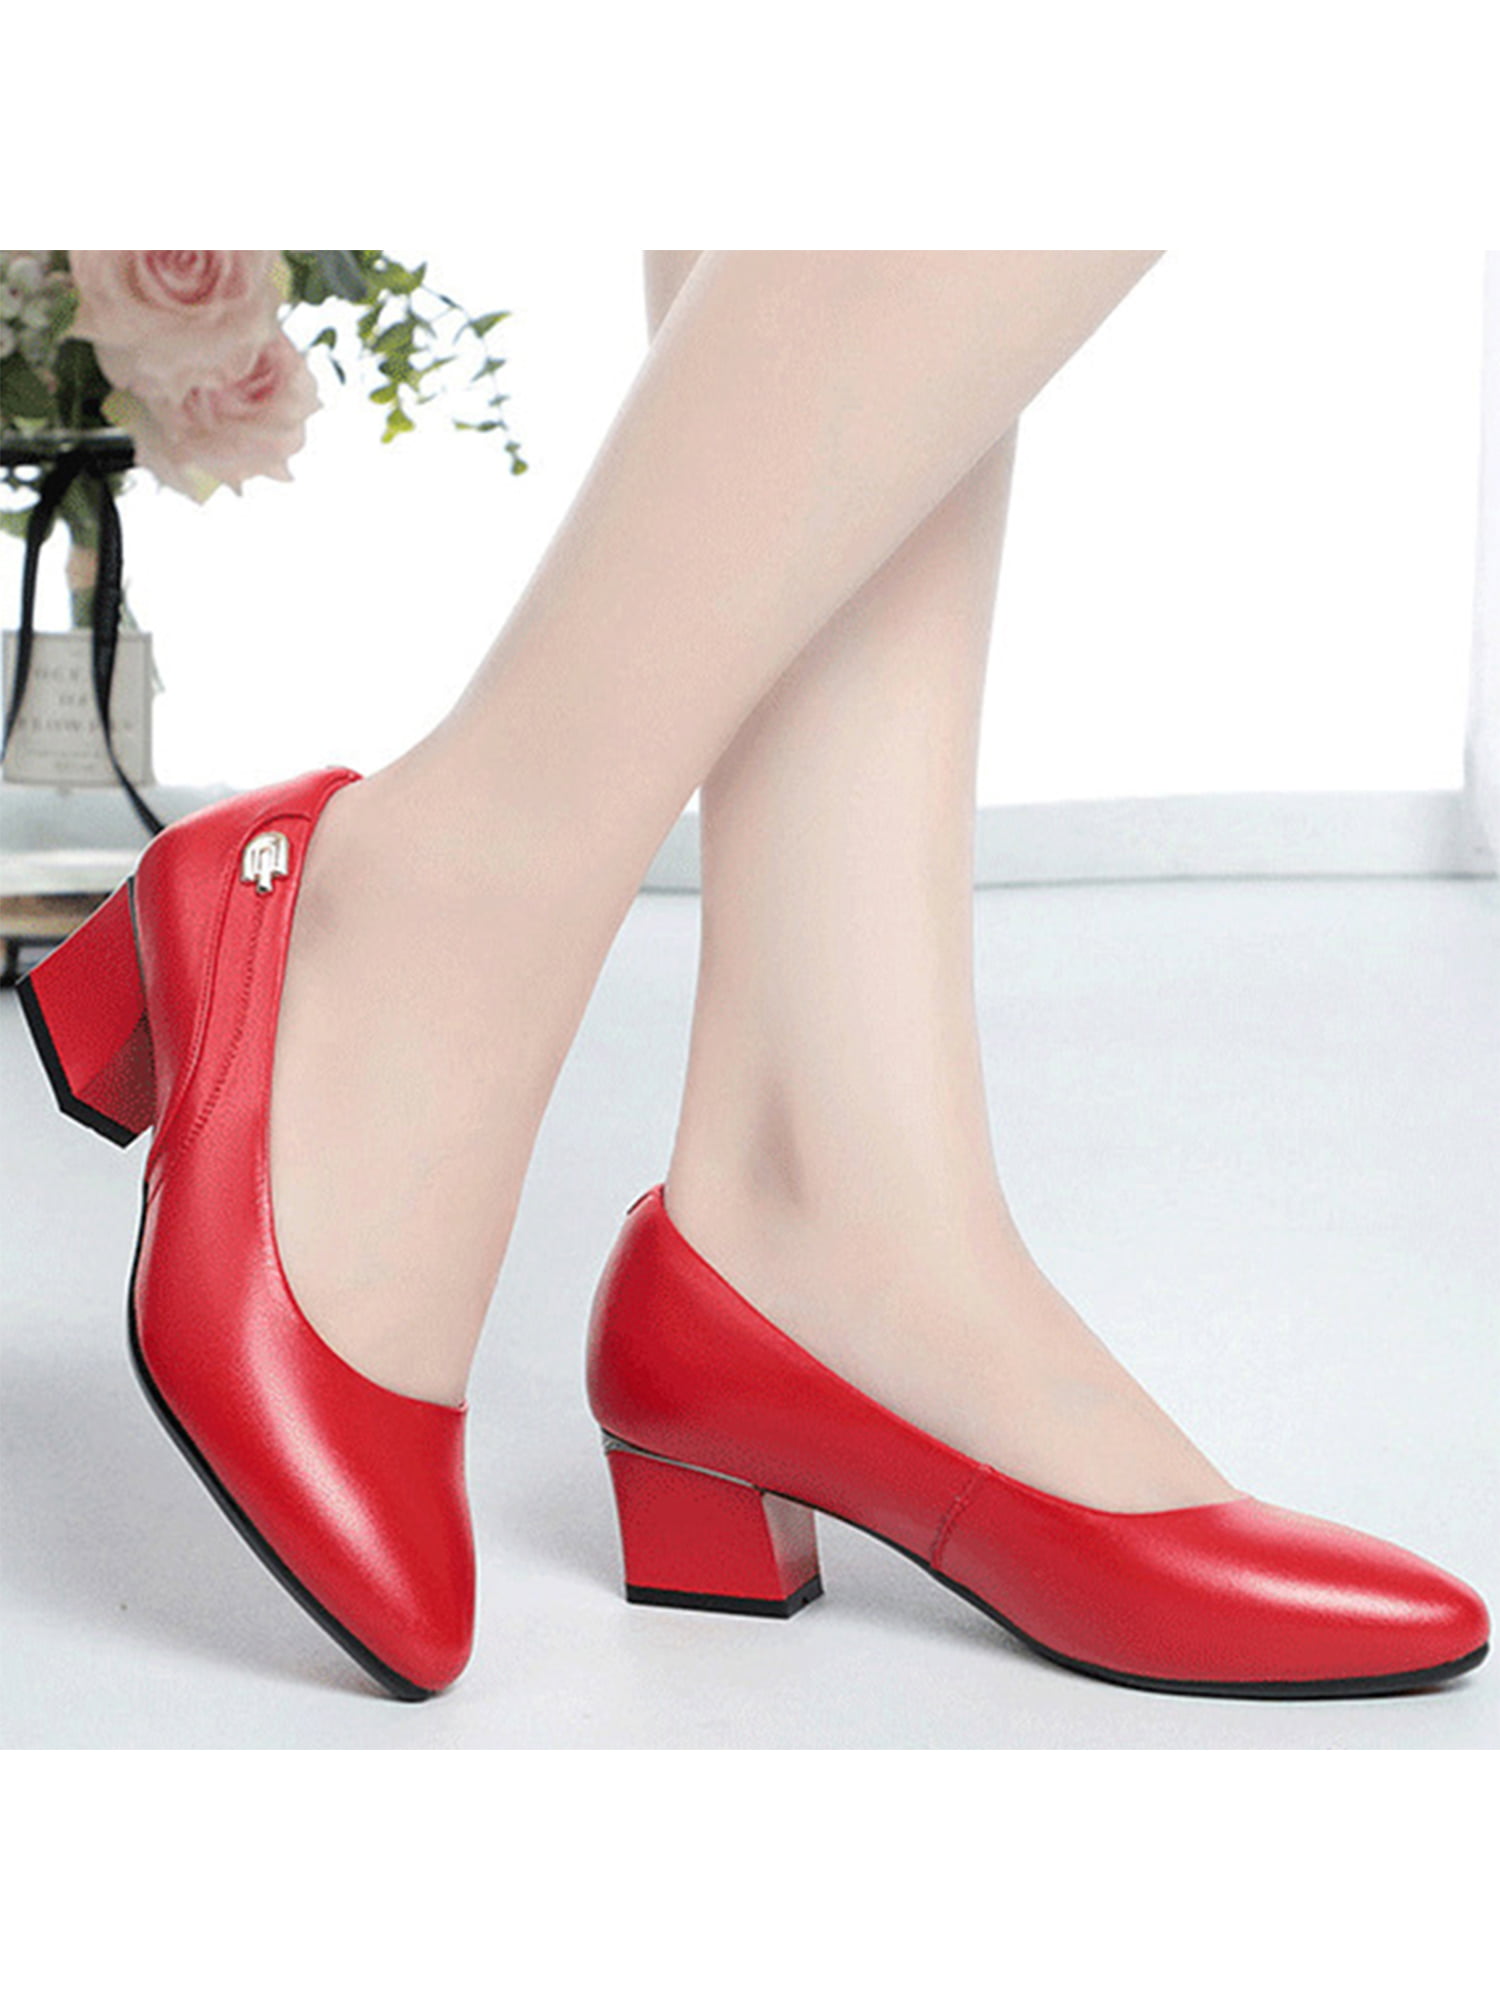 Boss lady office sling back shoe | Buy low heel womens office shoe